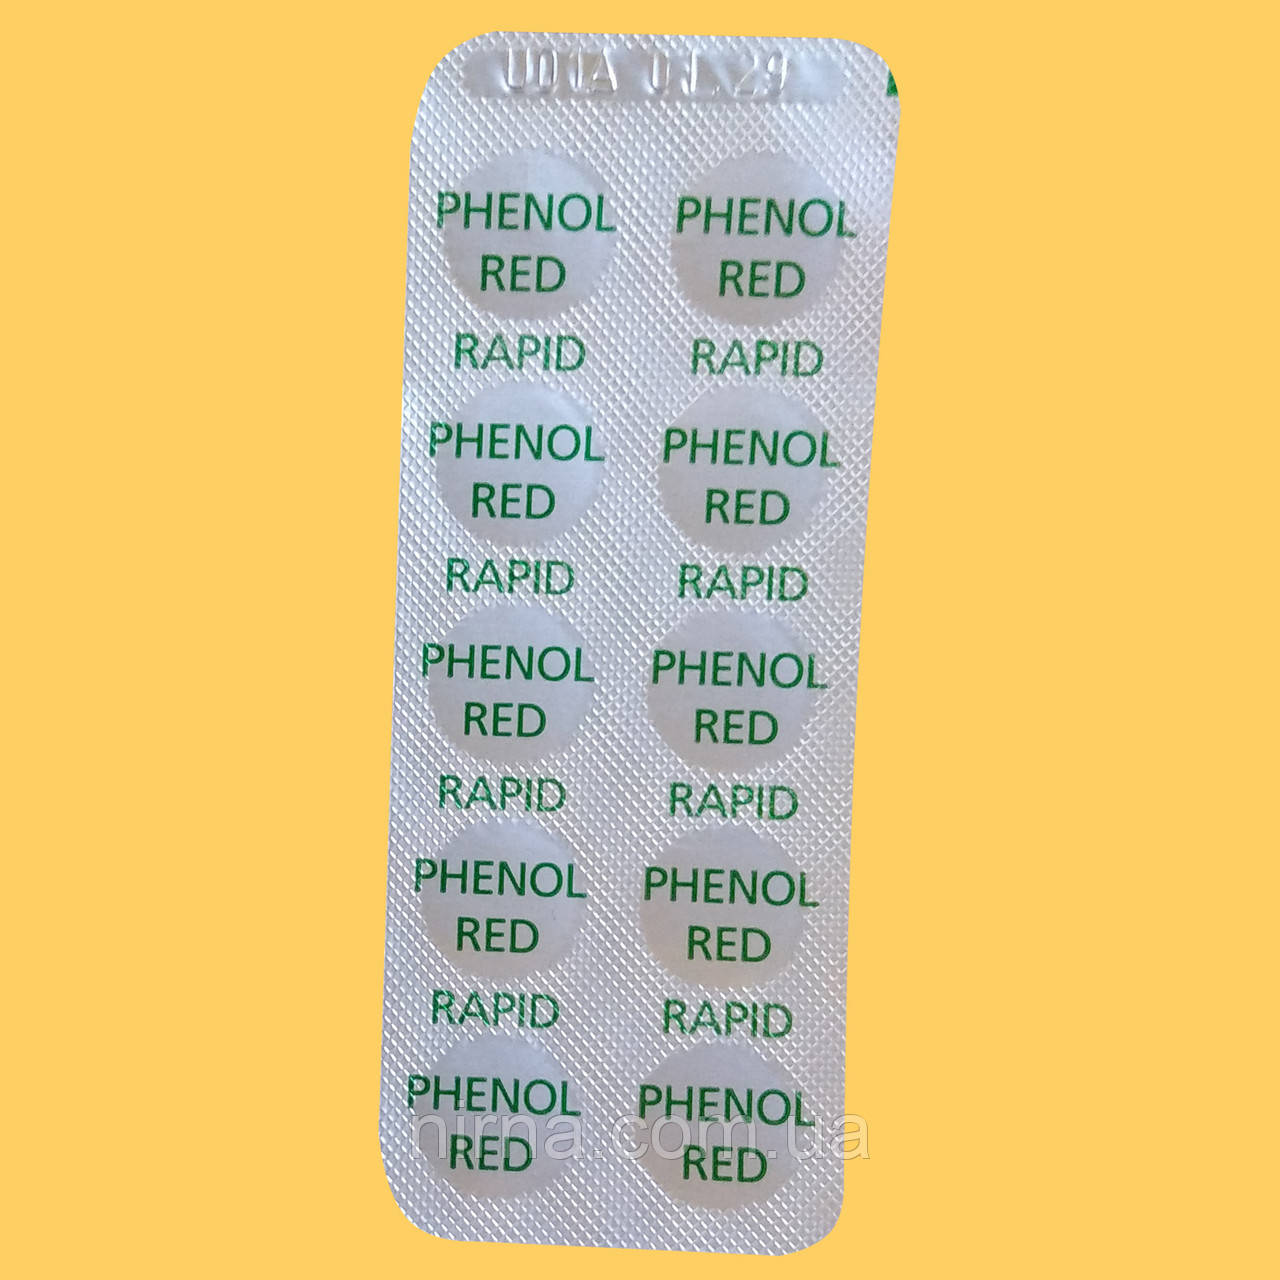 Запасні таблетки Ph (Phenol Red) для тестера. Хімія для басейну